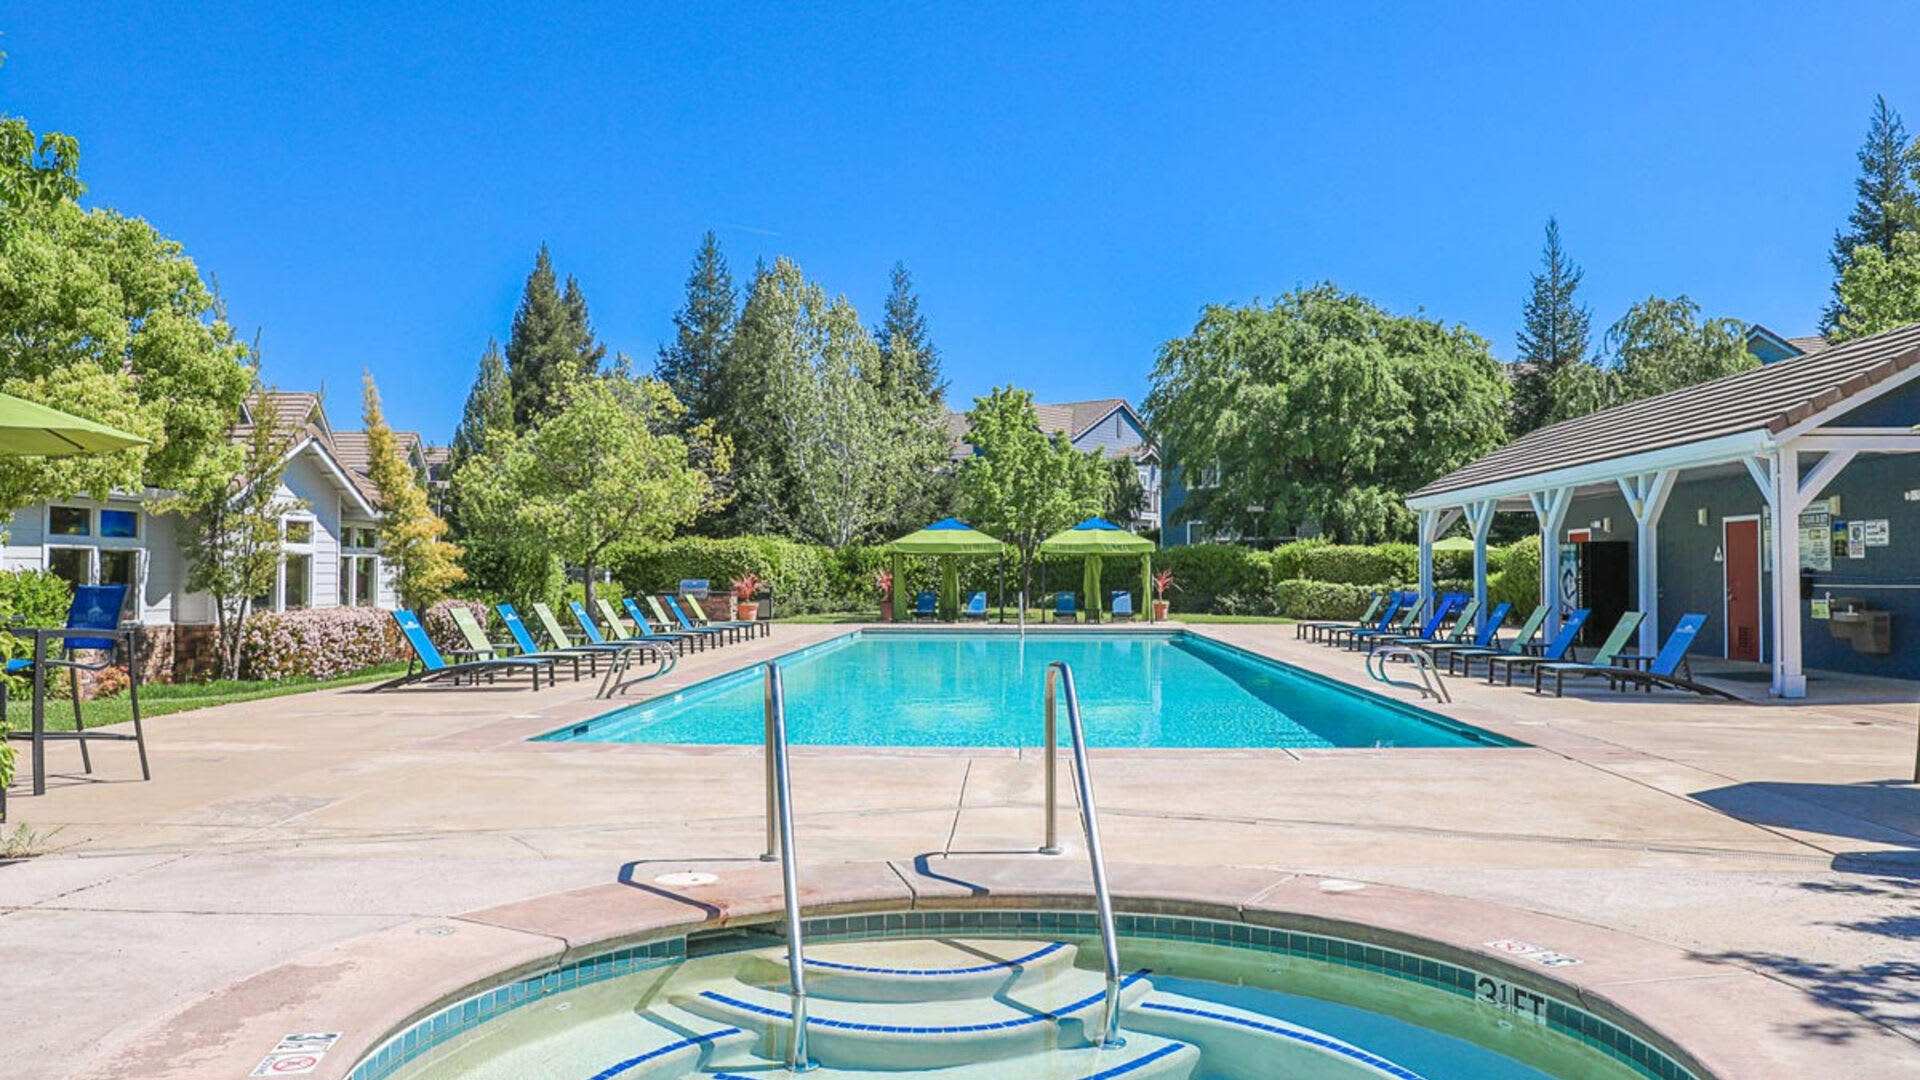 Hot tub and swimming pool at Rocklin Ranch Apartments in Rocklin, California